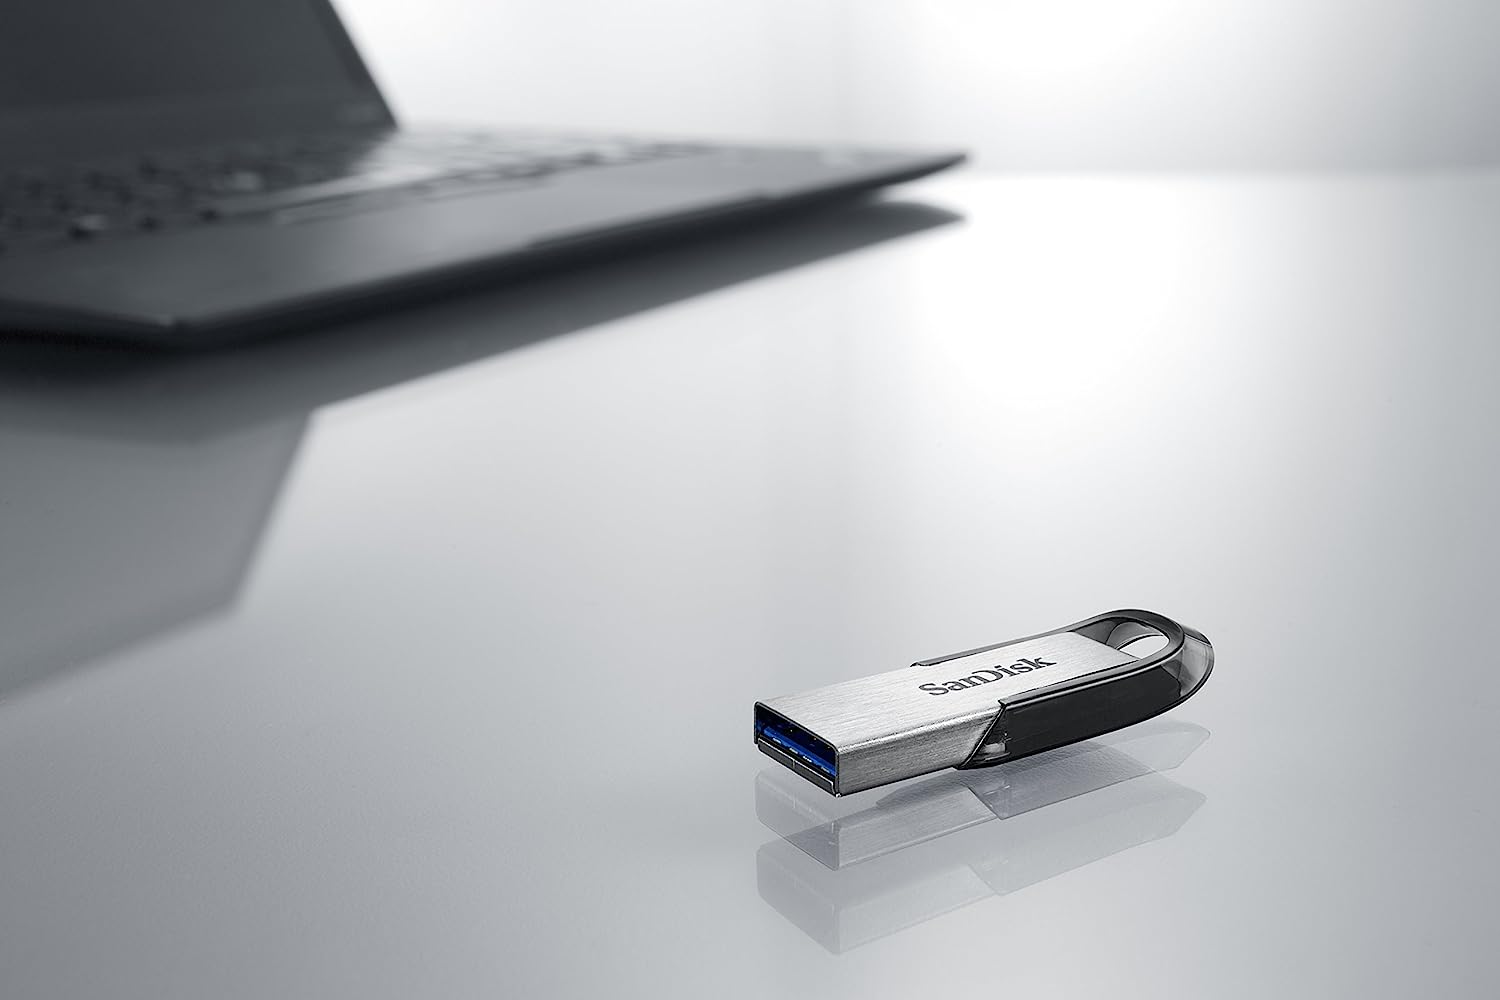 SanDisk 32GB 64GB 128GB 256GB 512GB Ultra Flair USB 3.0 Flash Drive